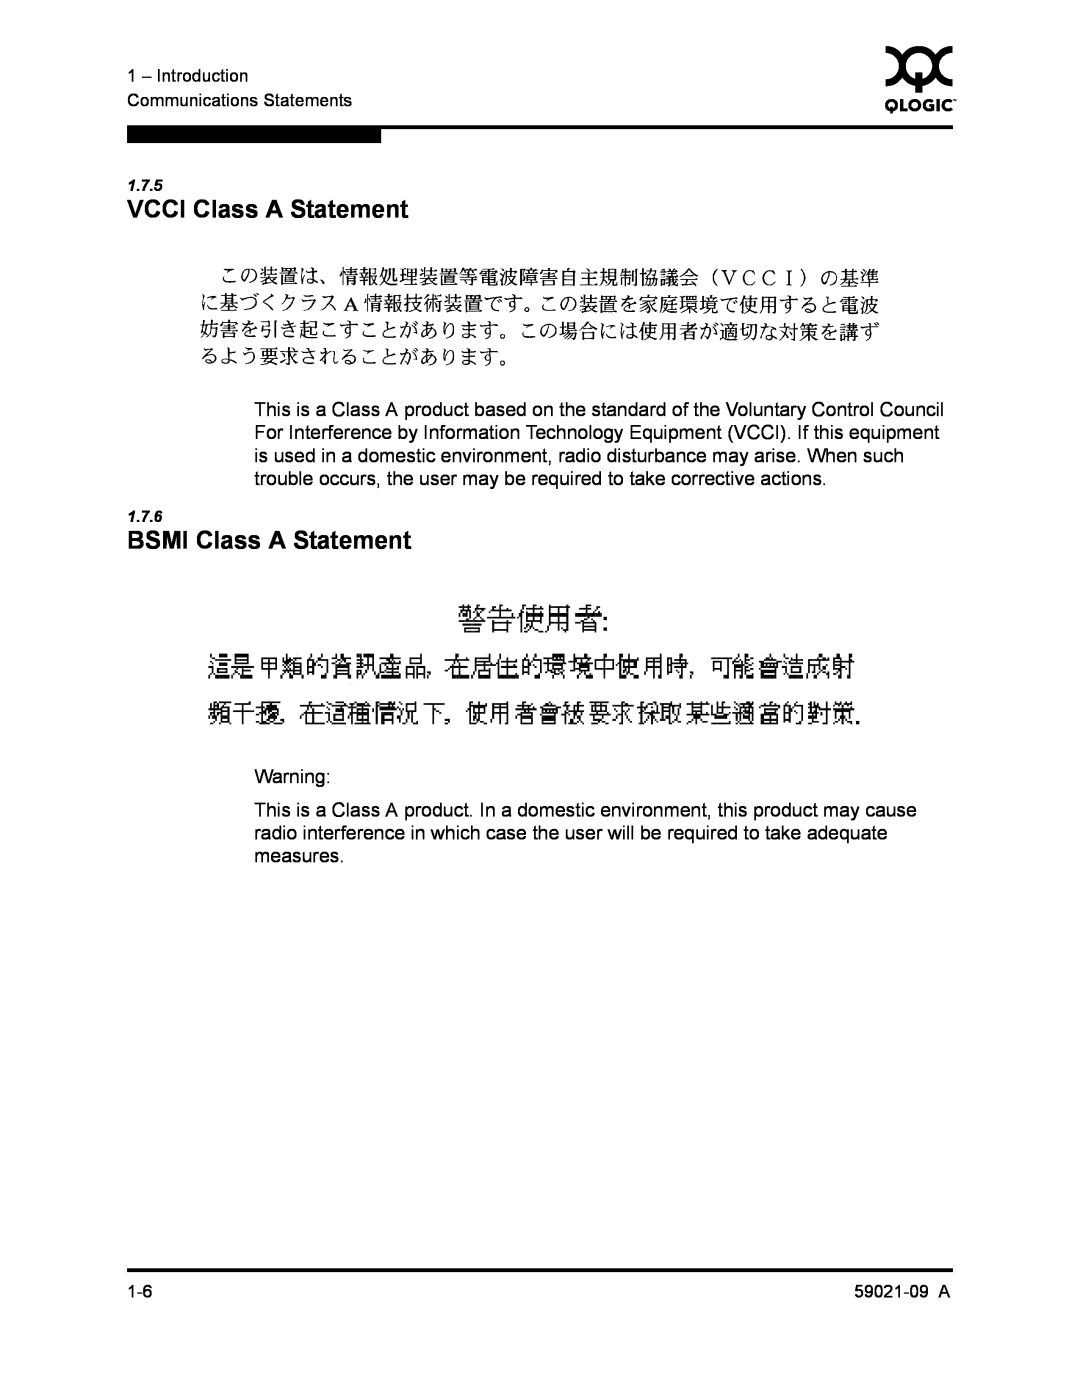 Q-Logic QLA2342, SB2A-16B manual VCCI Class A Statement, BSMI Class A Statement 